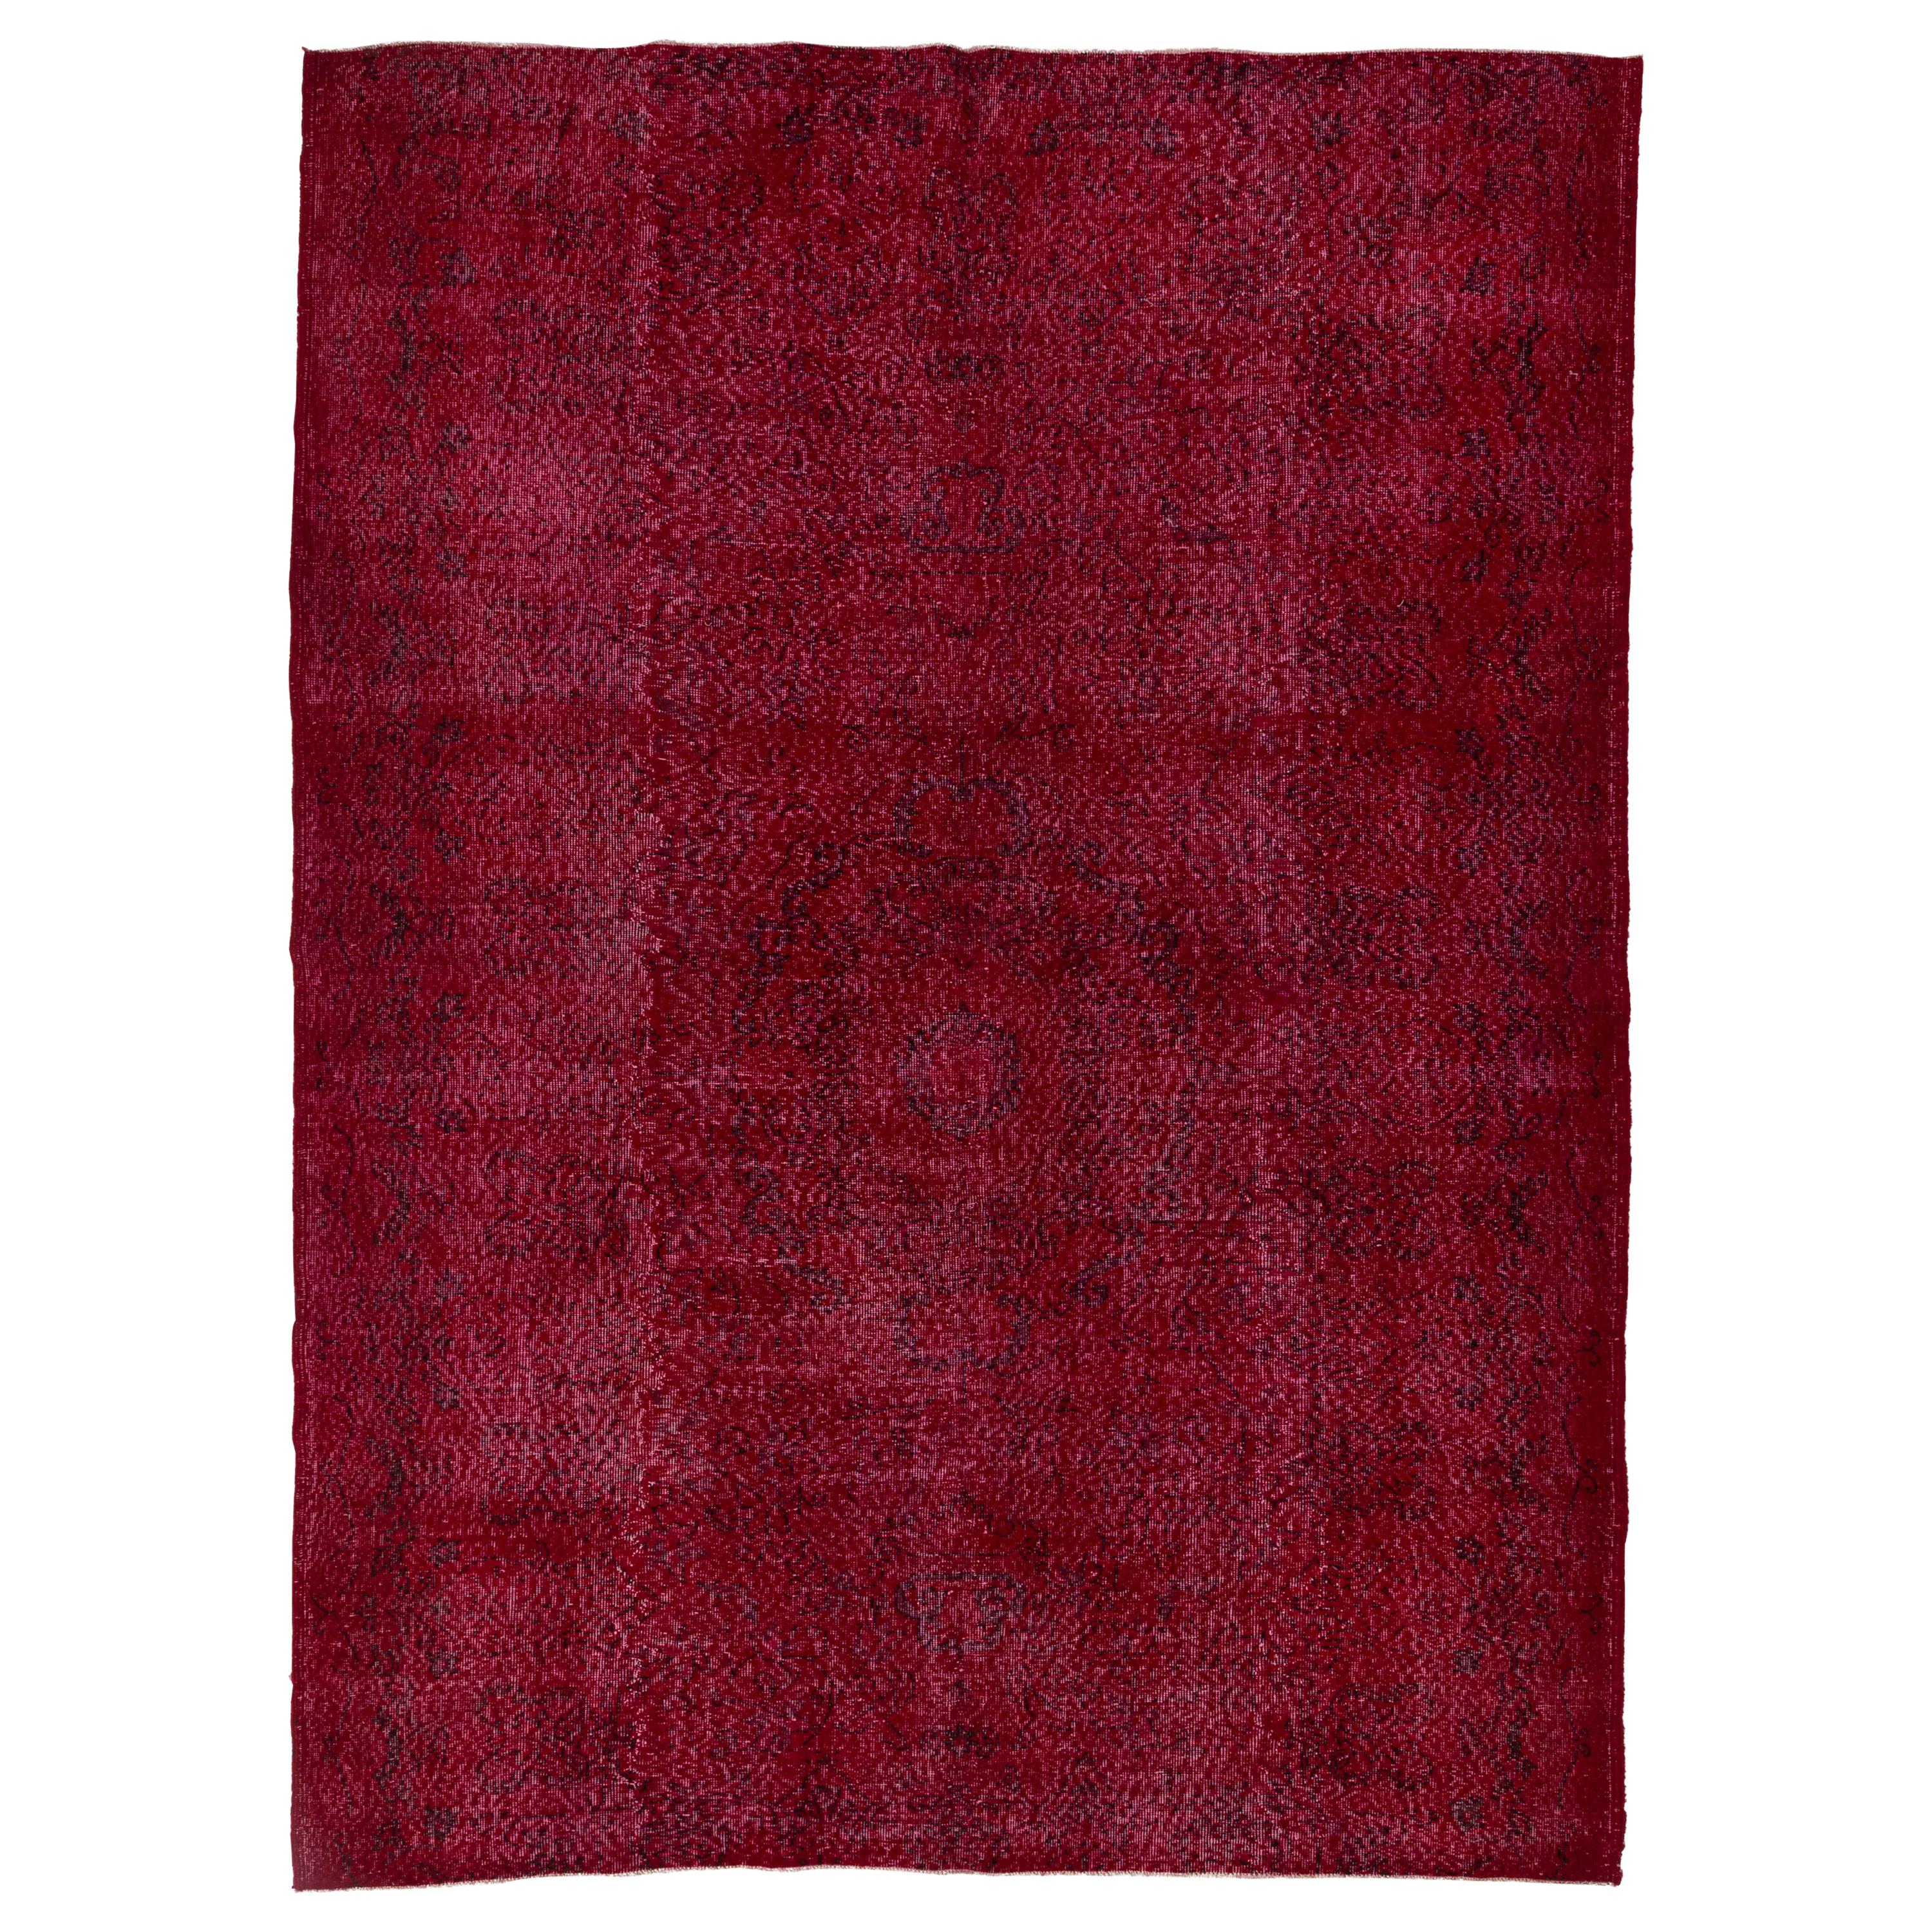 7,4x10 Fuß Vintage Handgefertigter türkischer Teppich aus Wolle in Rot, zeitgenössischer Teppich